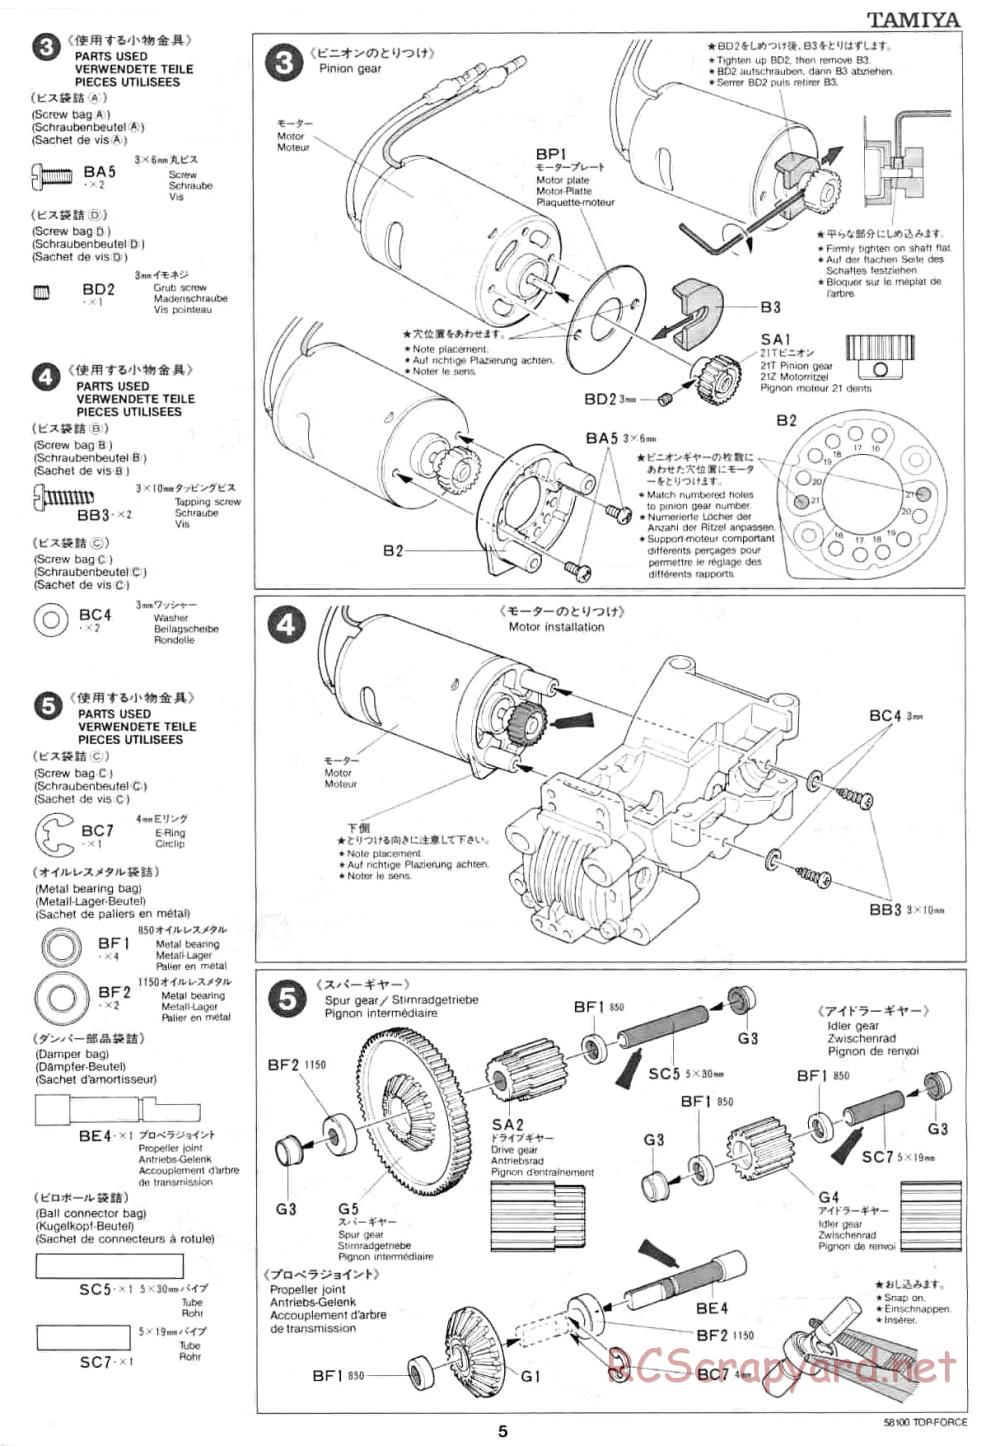 Tamiya - Top Force - 58100 - Manual - Page 5